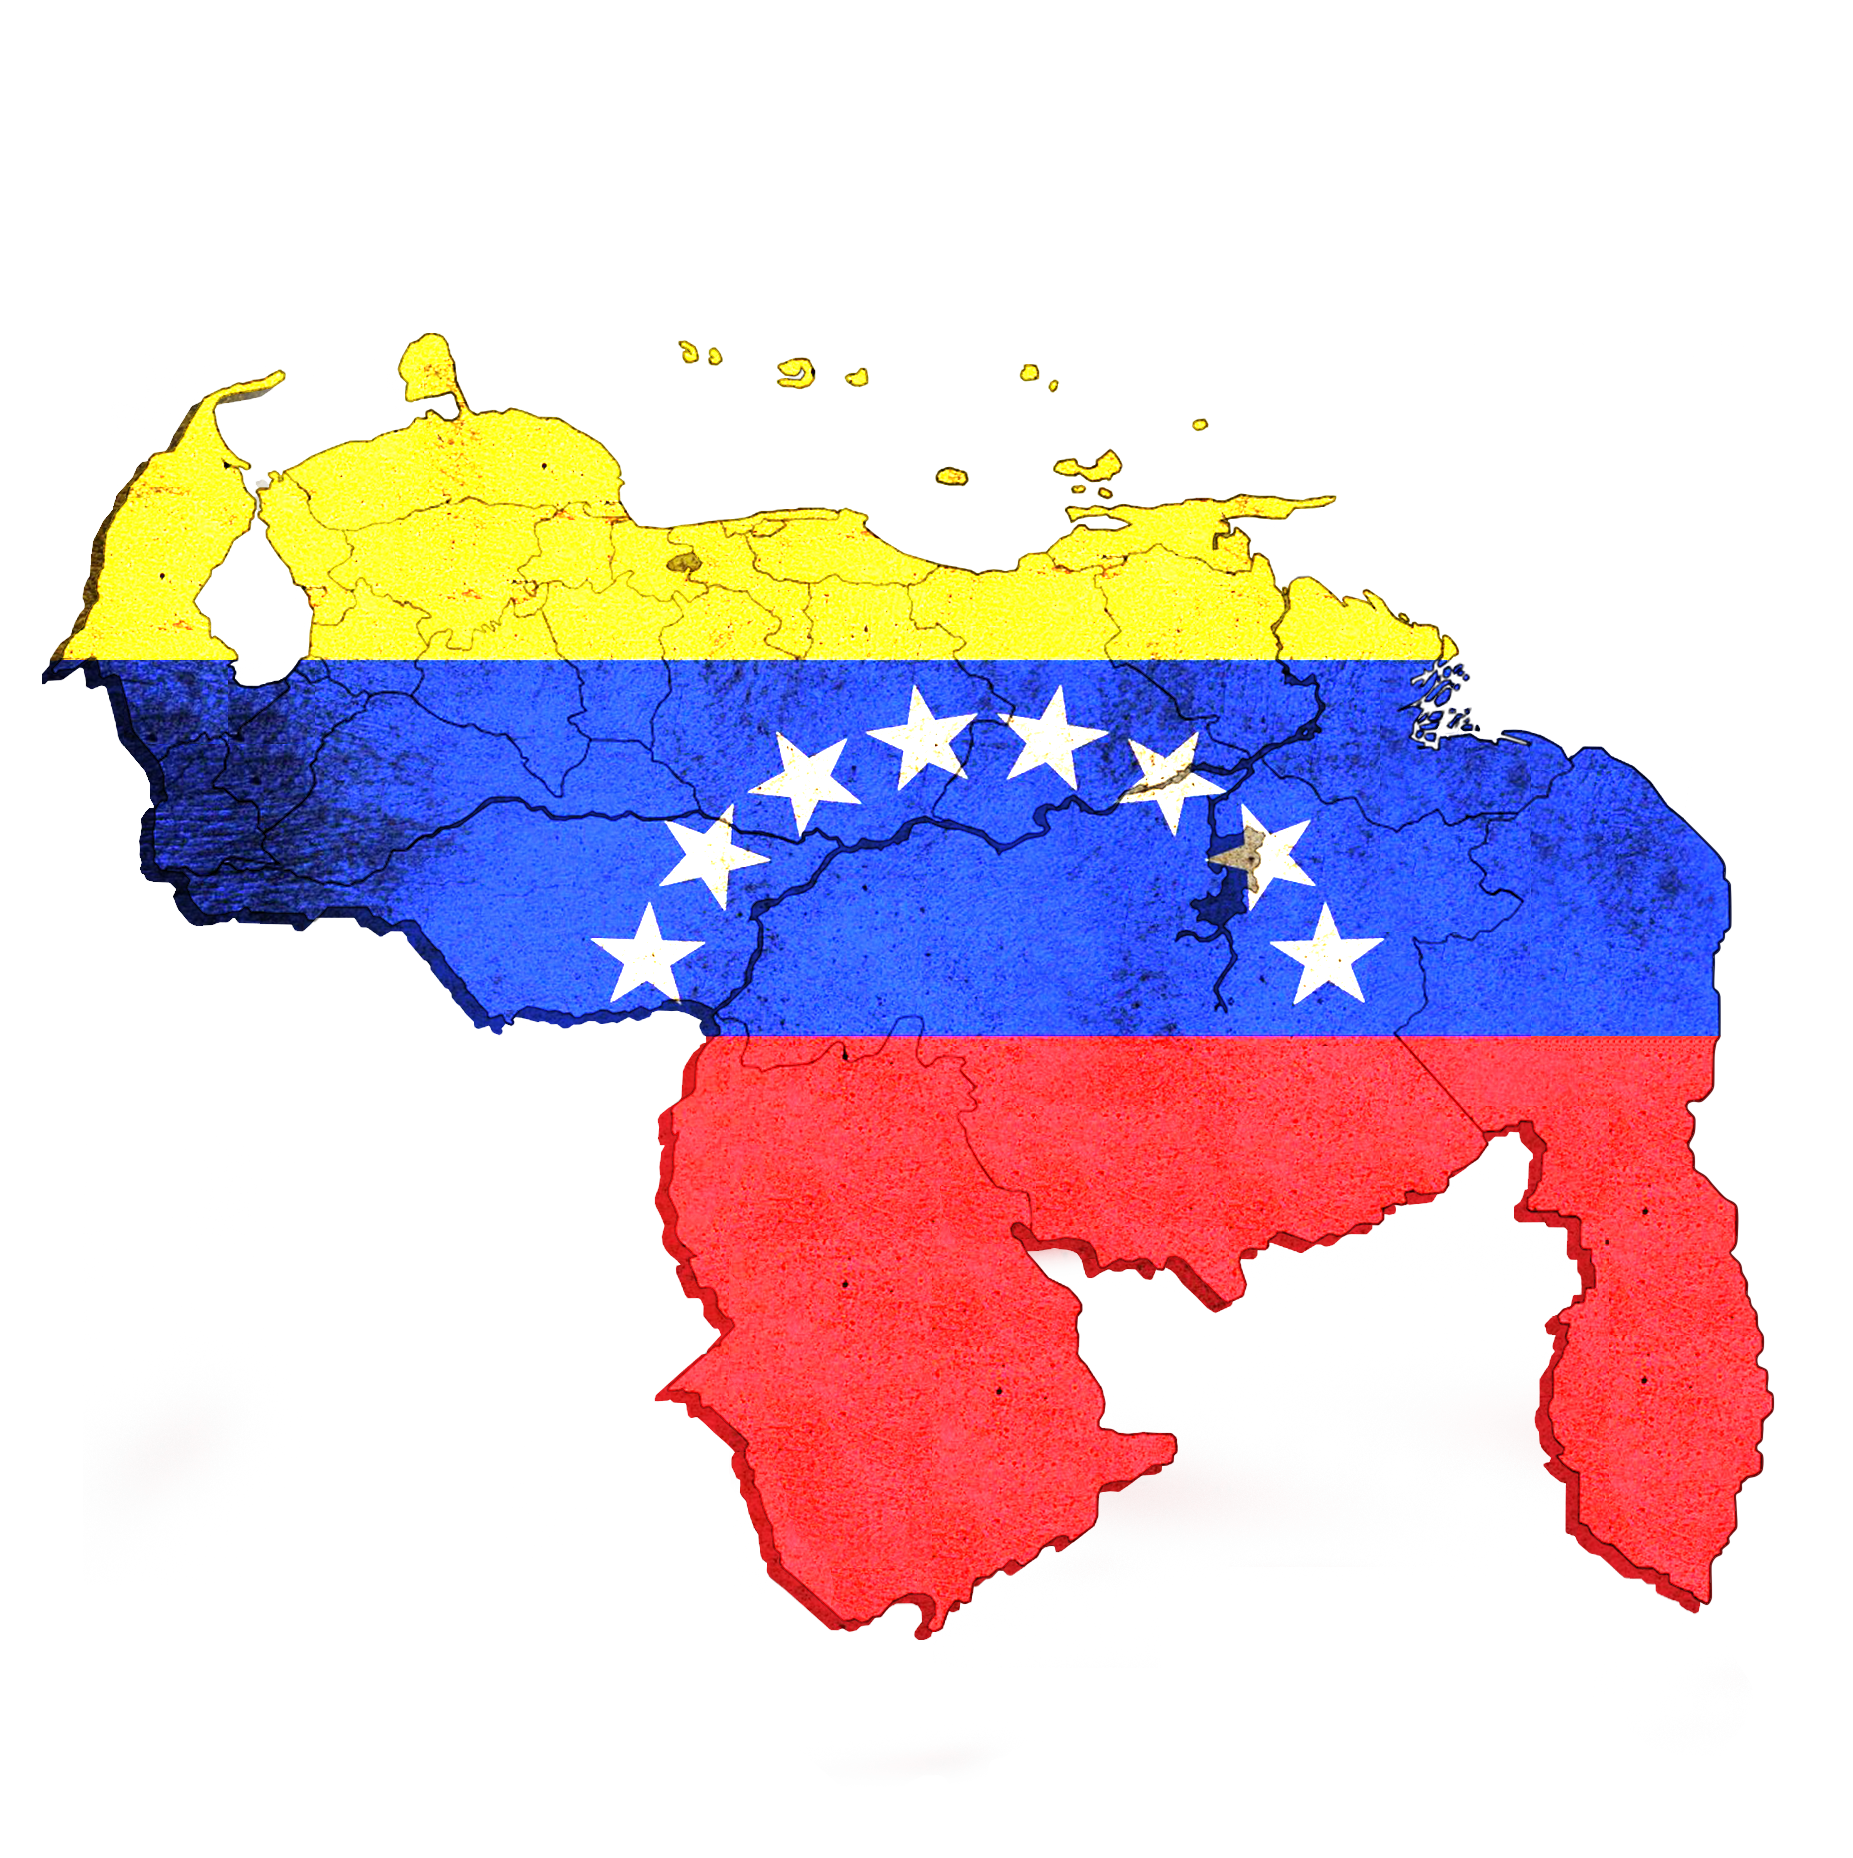 Mapa De Venezuela En Png Con La Bandera By Imagenes En Png On